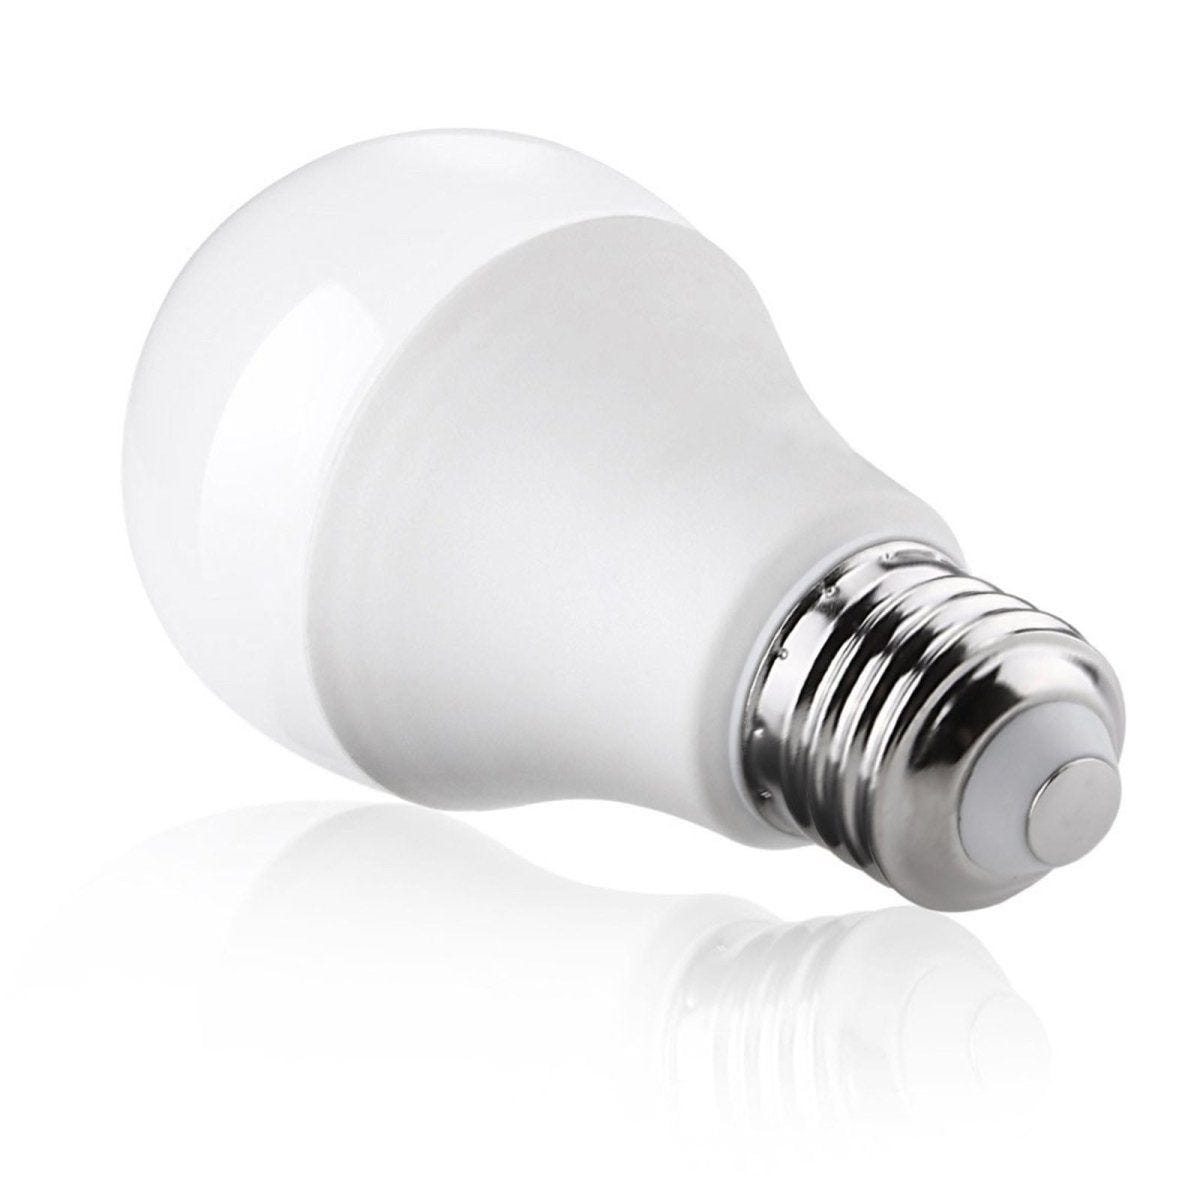 Ampoule LED A70 E27 18W 6000k - Puissante et Économique